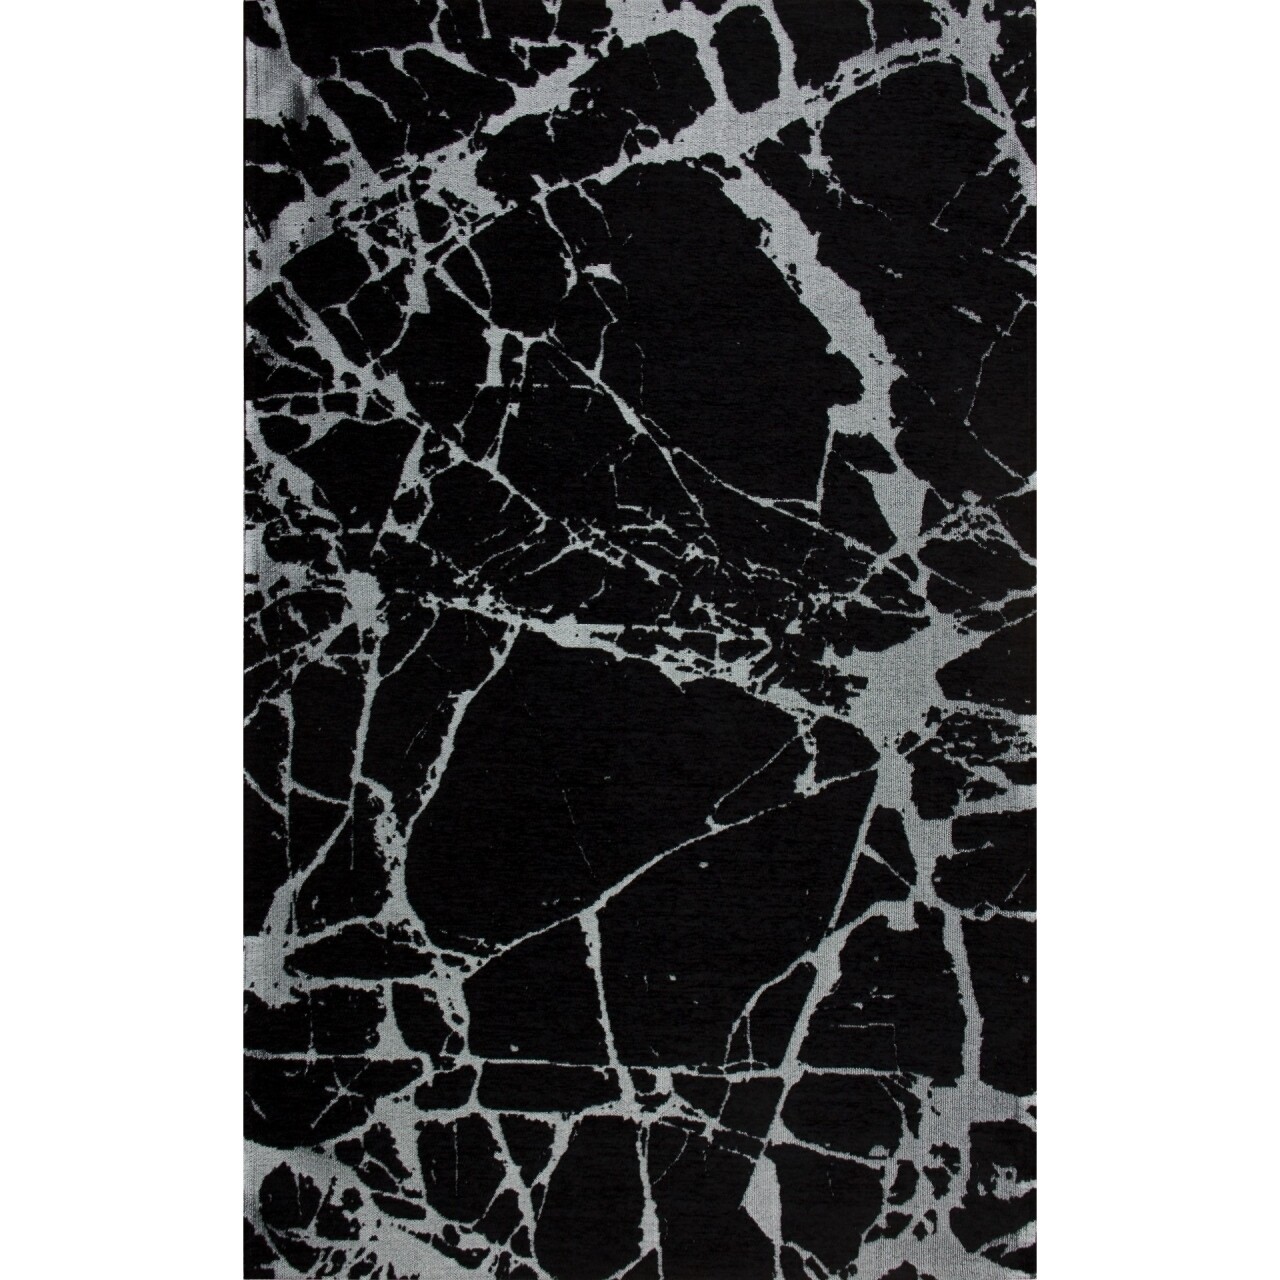 Eko sm 21 - black ellenálló szőnyeg, silver xw, 80x300 cm